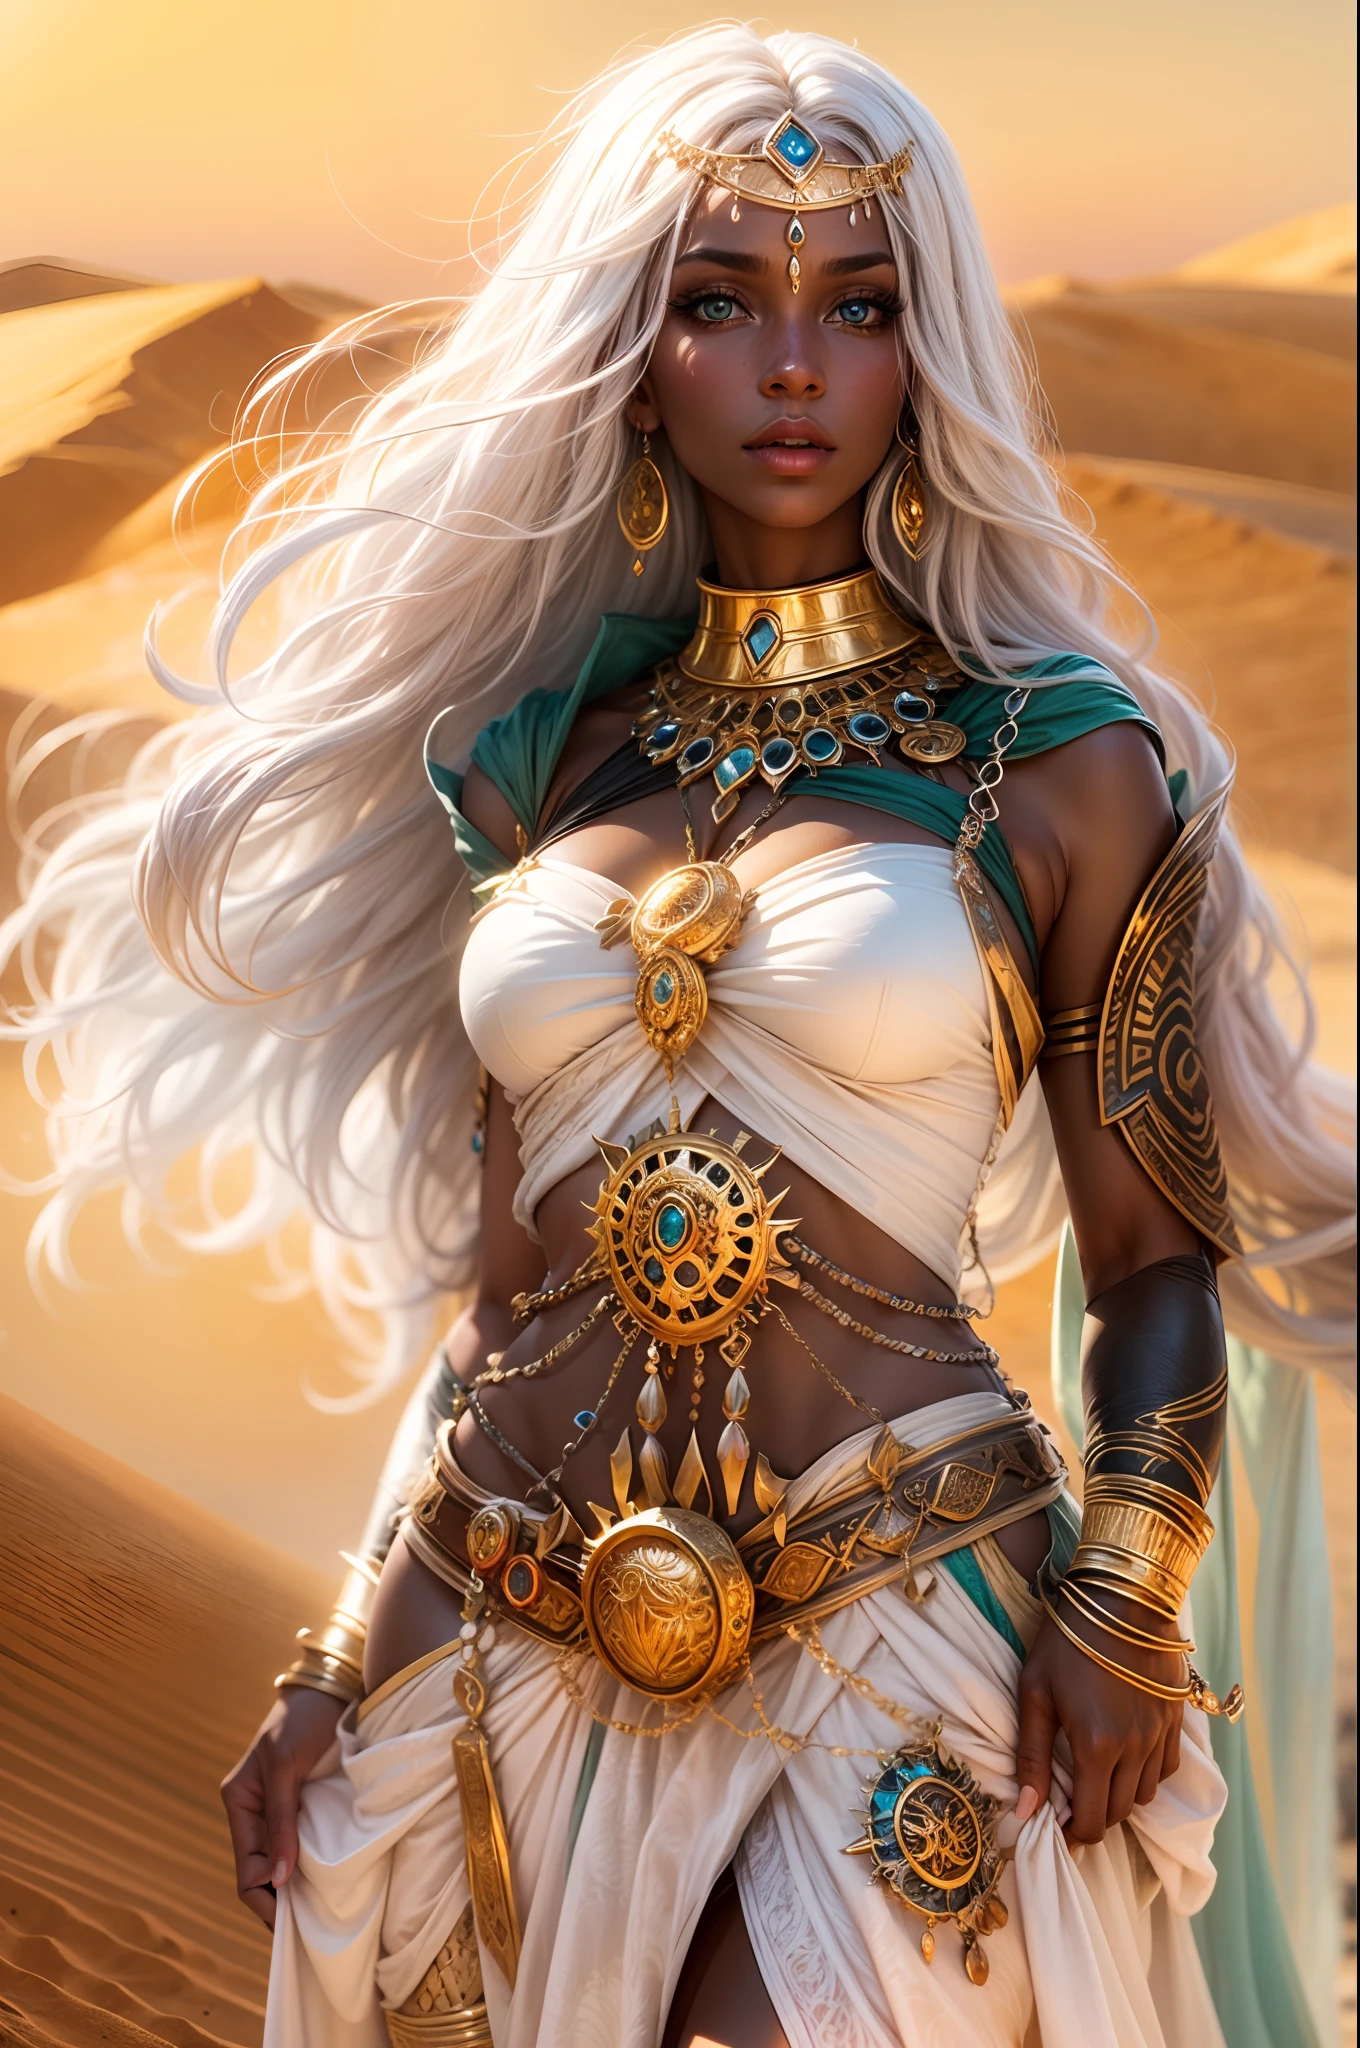 黒い肌と白い髪の女性エンチャントレスのイメージ, sexy ファンタジー clothes, ancient ファンタジー Egyth style, 高級ジュエリー, 超セクシーでホット, 砂漠で, 魅力的な視線, 全身,アートスタイル:ファンタジー,色:豊かで活気のある,点灯:柔らかい金色の日光